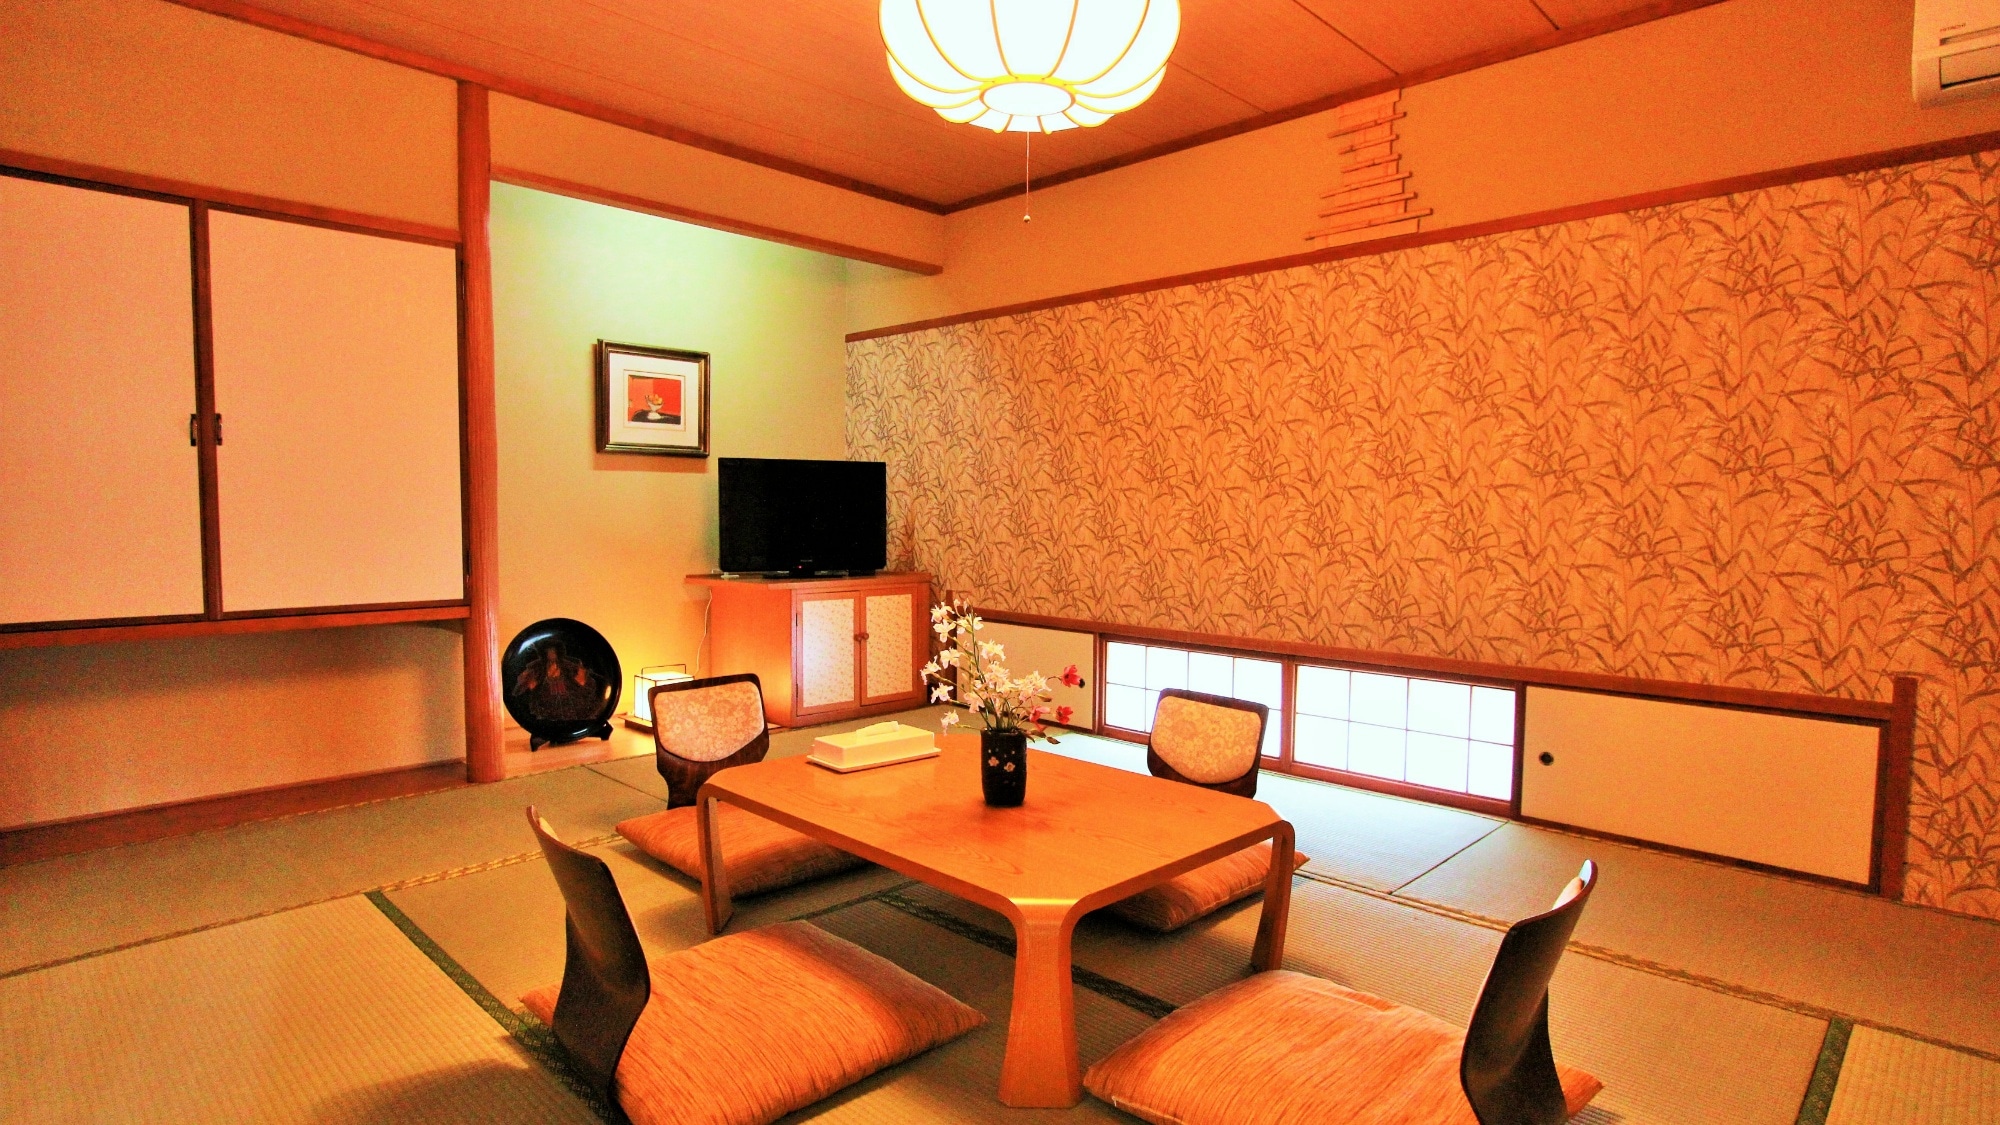 ห้องสไตล์ญี่ปุ่น 10 เสื่อทาทามิ Wi-Fi ใช้ได้